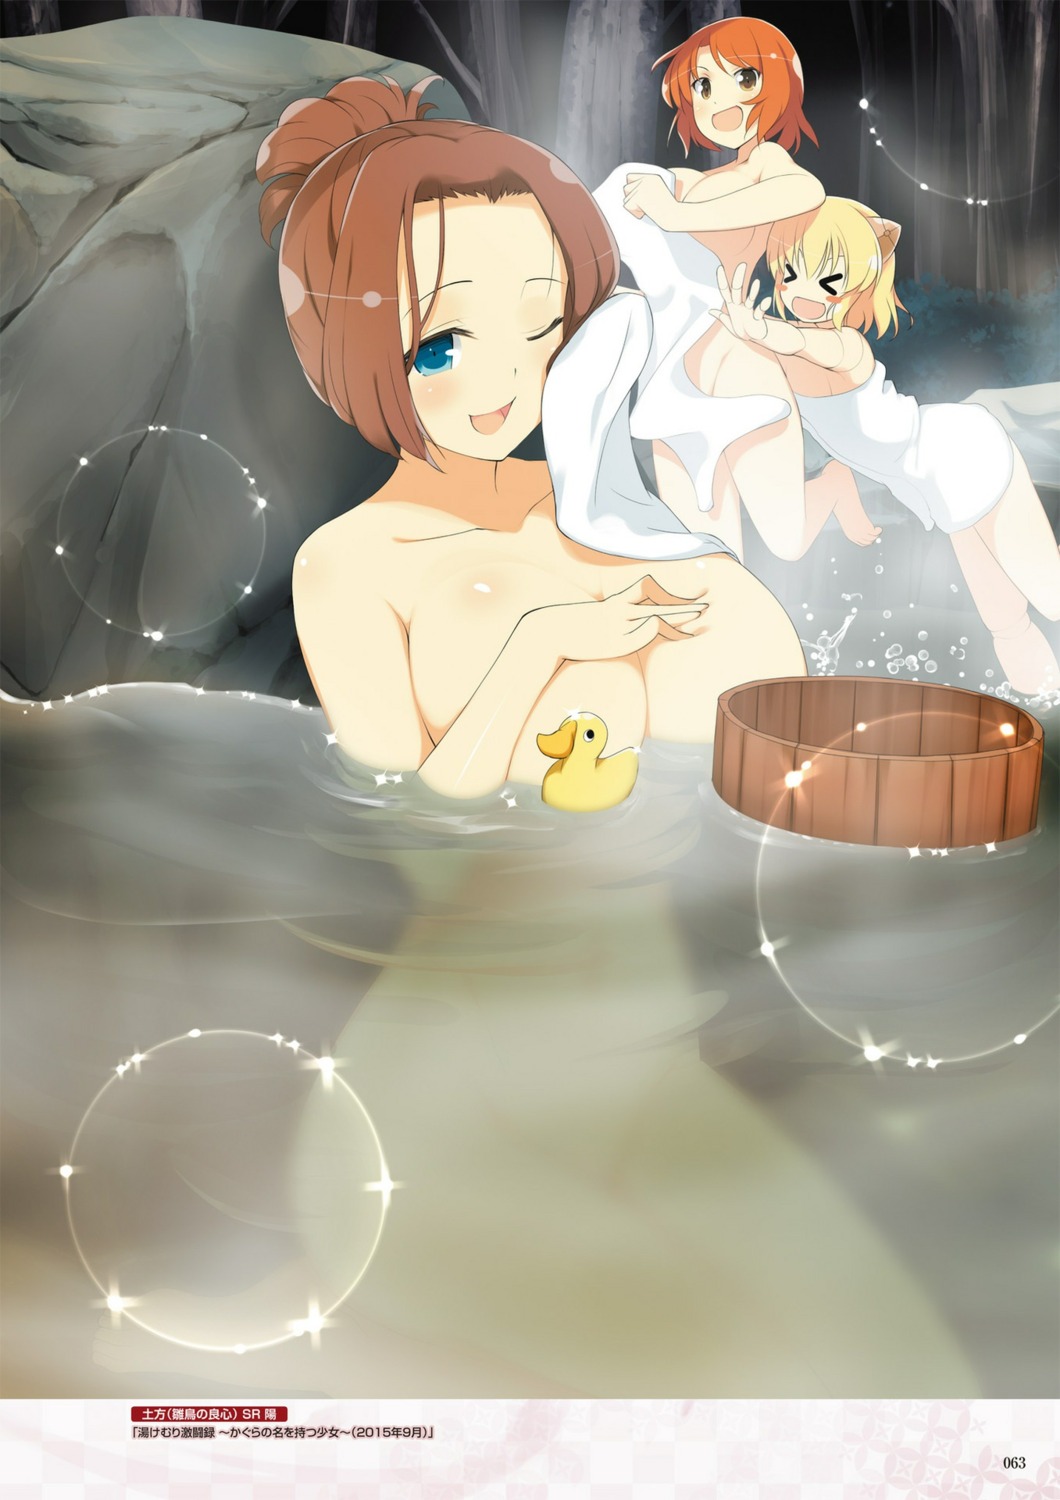 bathing digital_version fuuma_(senran_kagura) hijikata_(senran_kagura) mecha_musume muramasa_(senran_kagura) naked onsen senran_kagura senran_kagura:_new_wave towel wet